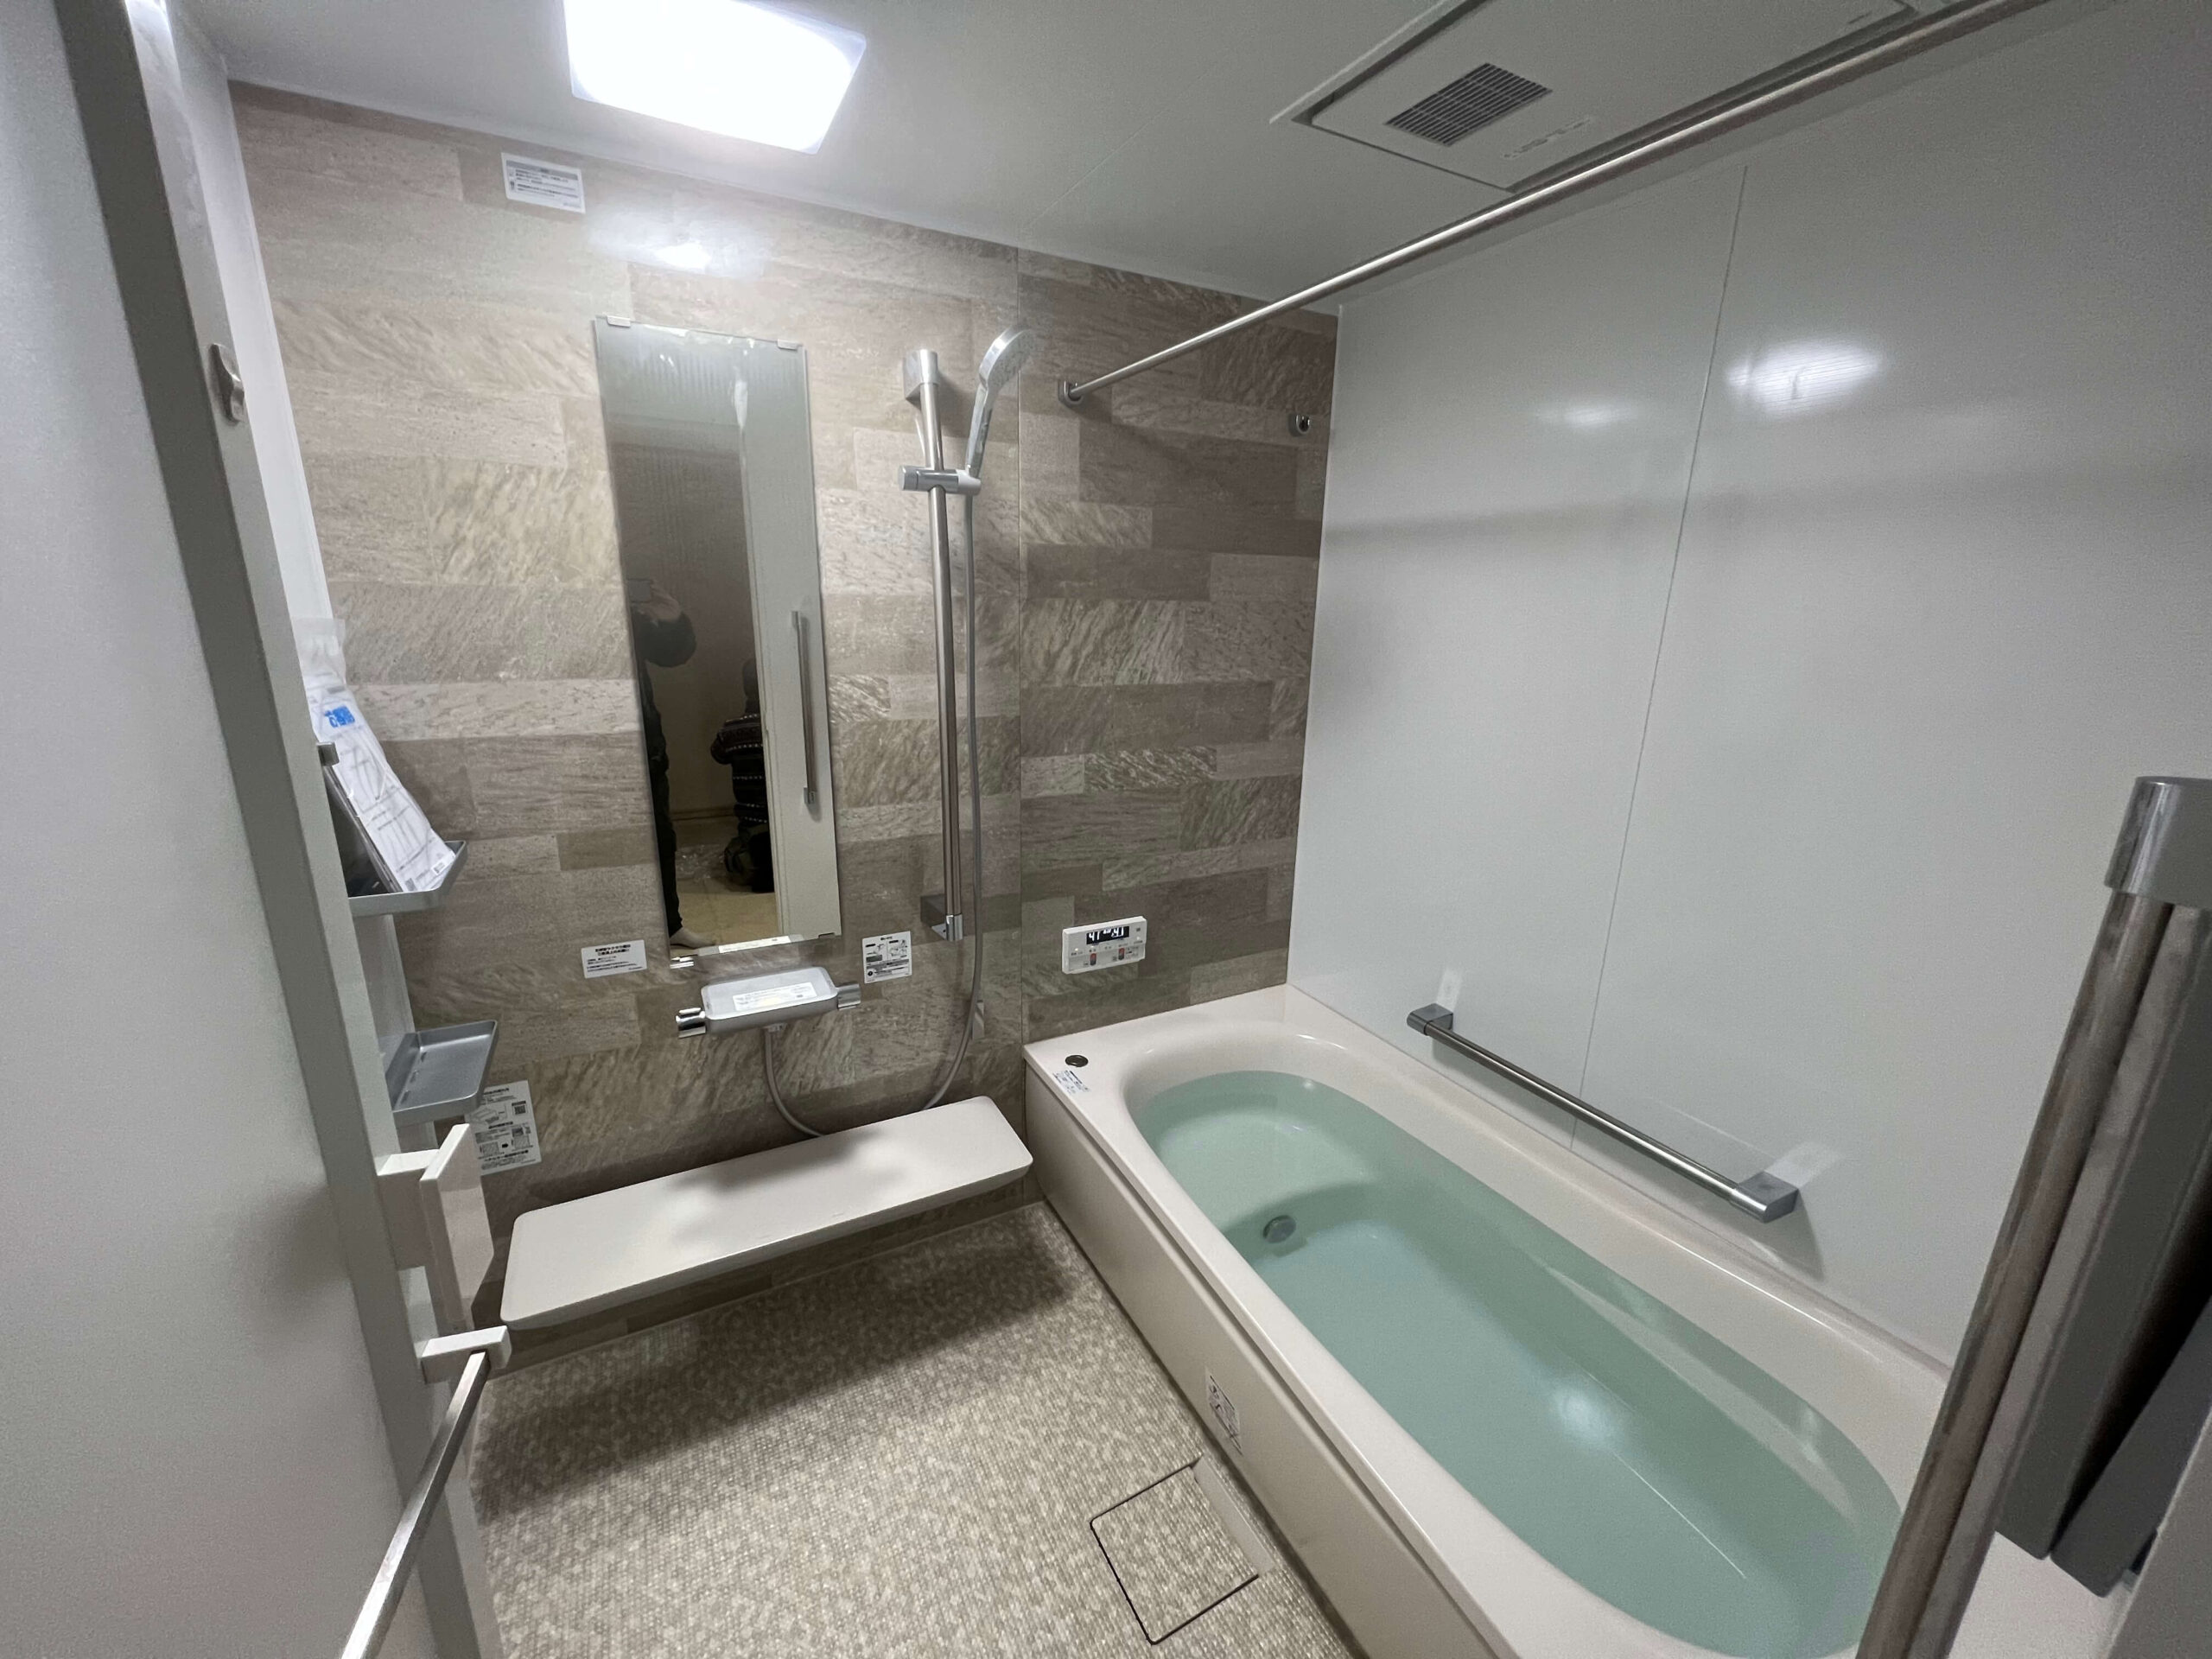 大阪府吹田市の浴室リフォームの施工事例を公開しました